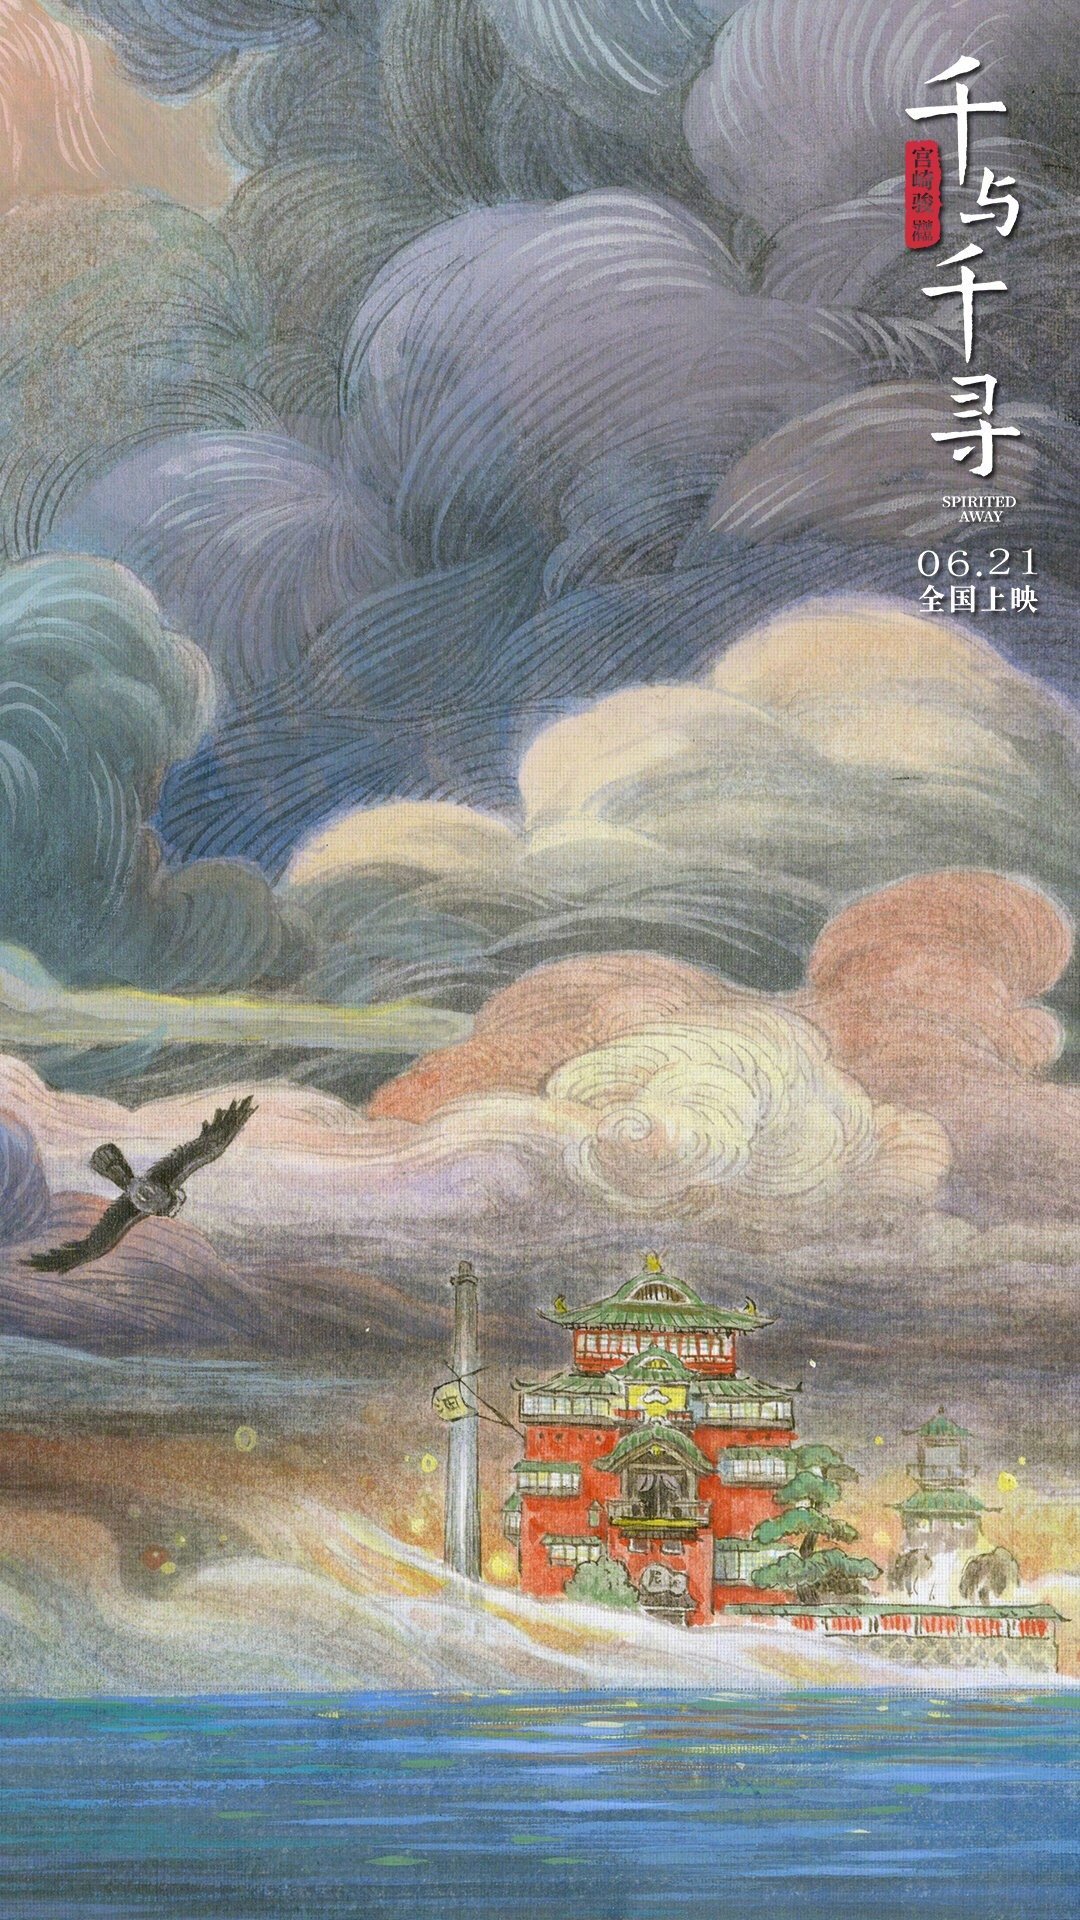 《千与千寻》中国版海报,清新雅致的古风之美,手机壁纸情侣手绘